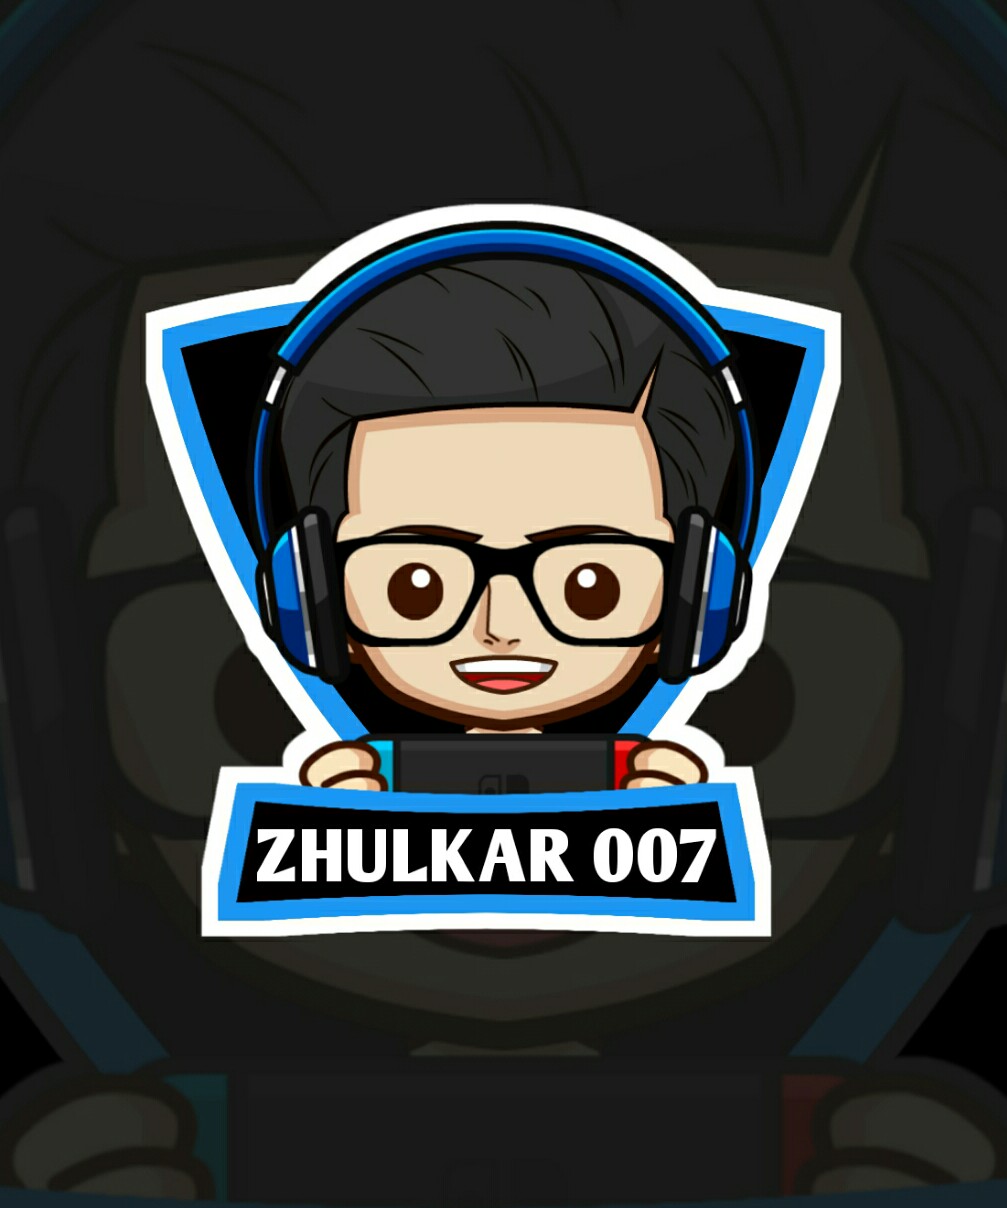 ZhulkaR007